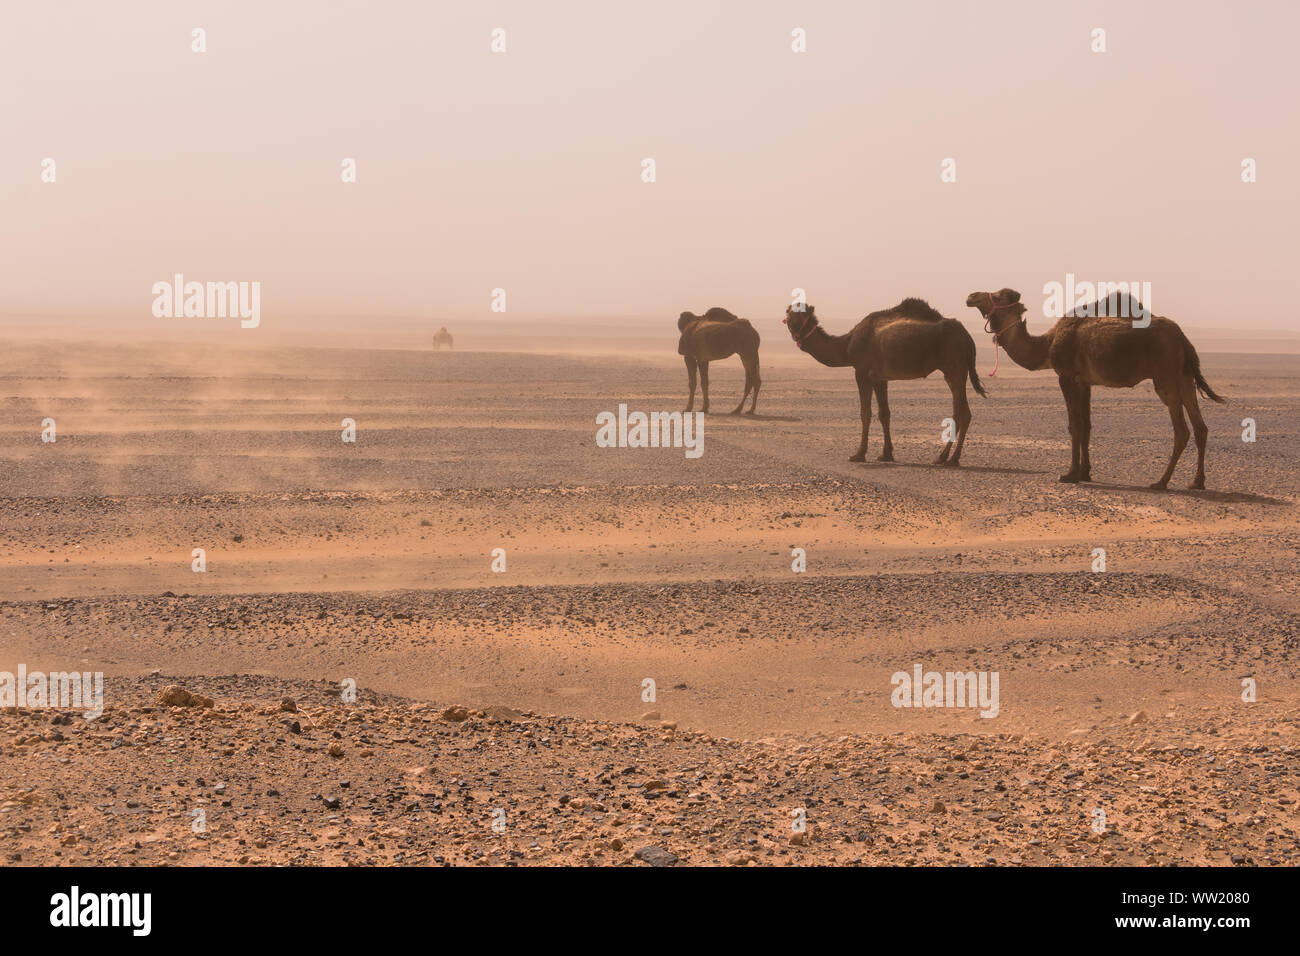 Drei Kamele Spaziergang durch die Erg Chebbi Wüste durch einen Sandsturm, Marokko. Natur Konzept Stockfoto